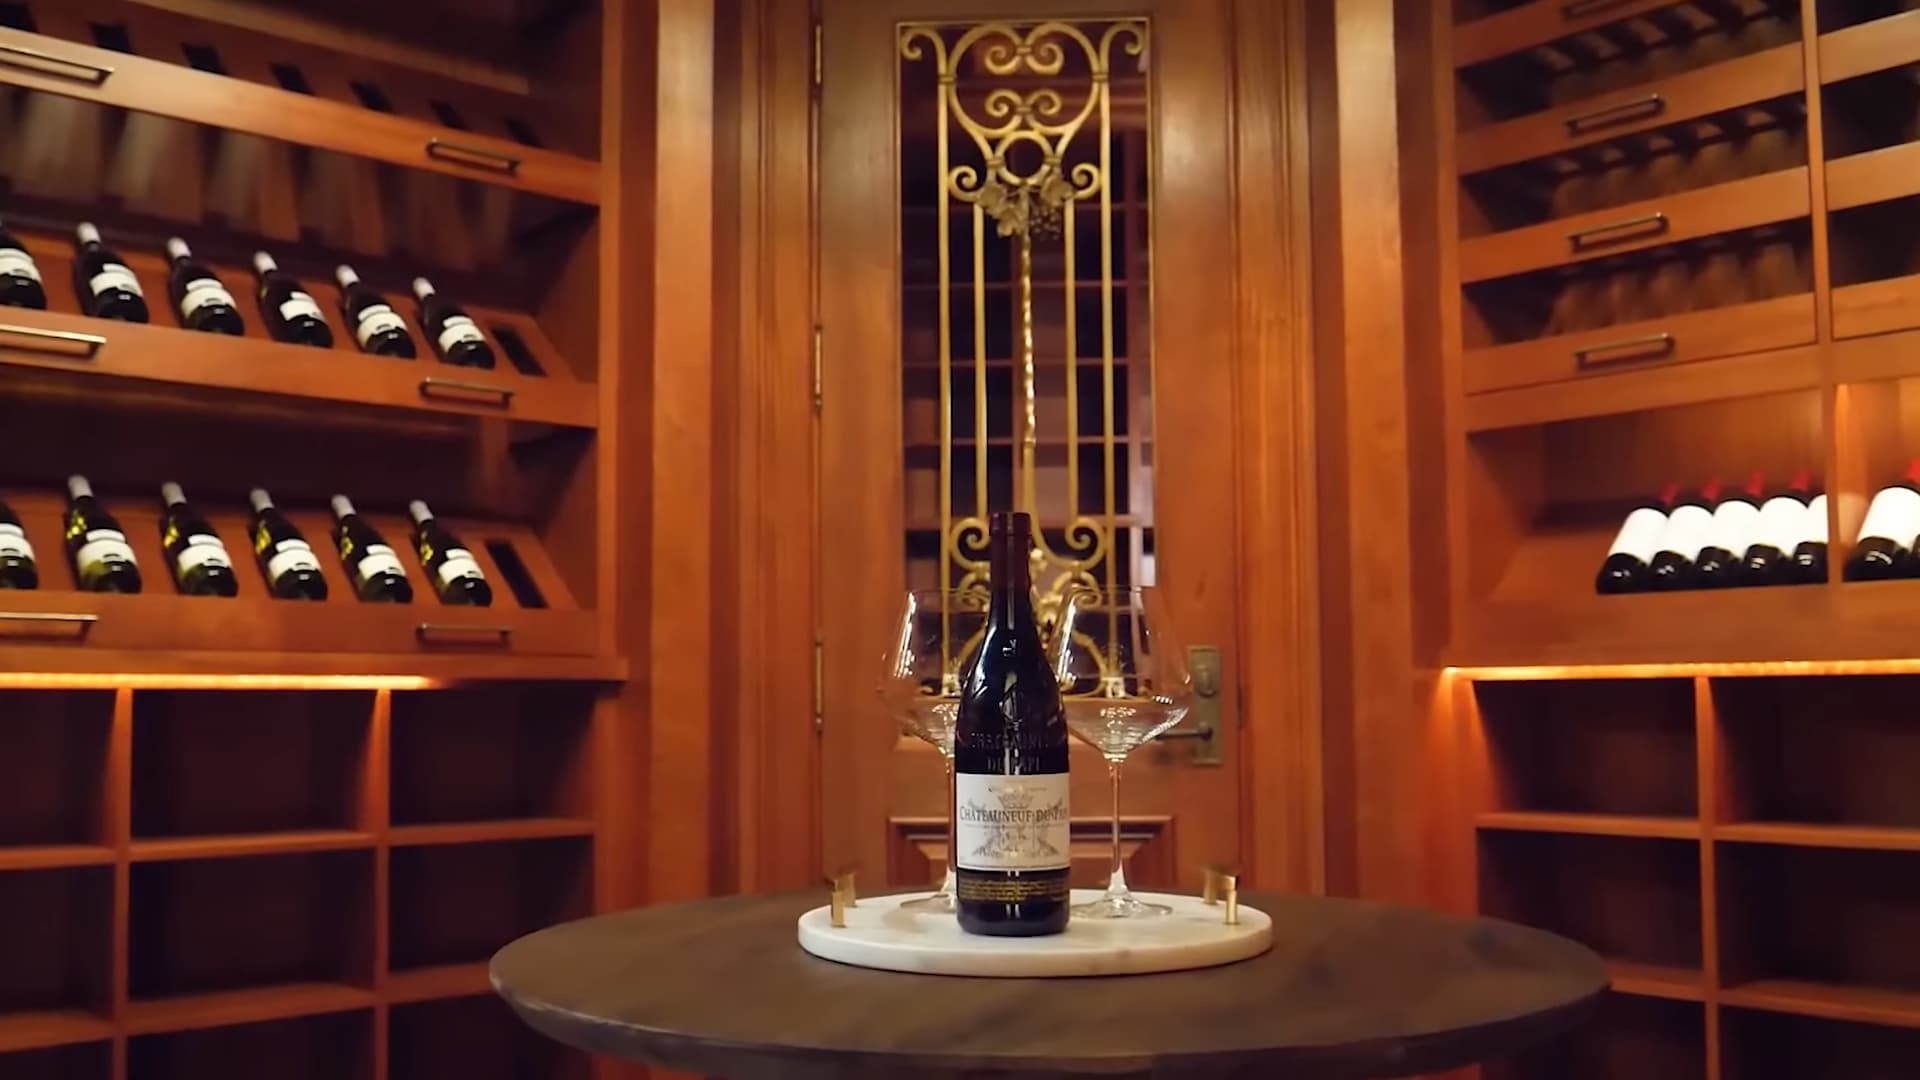 Howard Stern’s wine cellar